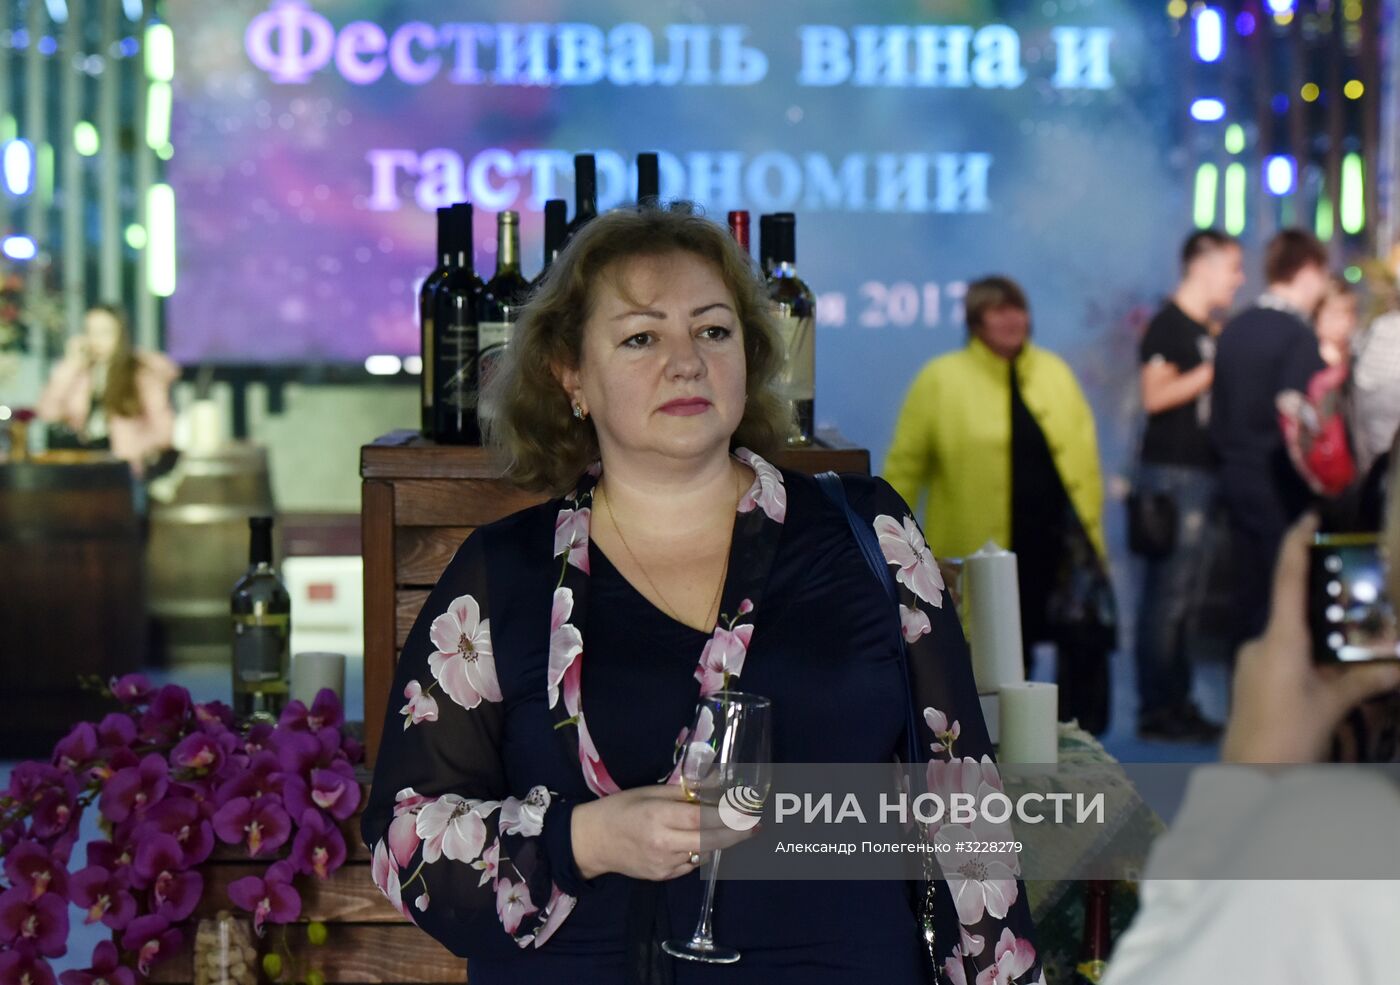 Гастрономический фестиваль "Ноябрьфест" в Крыму